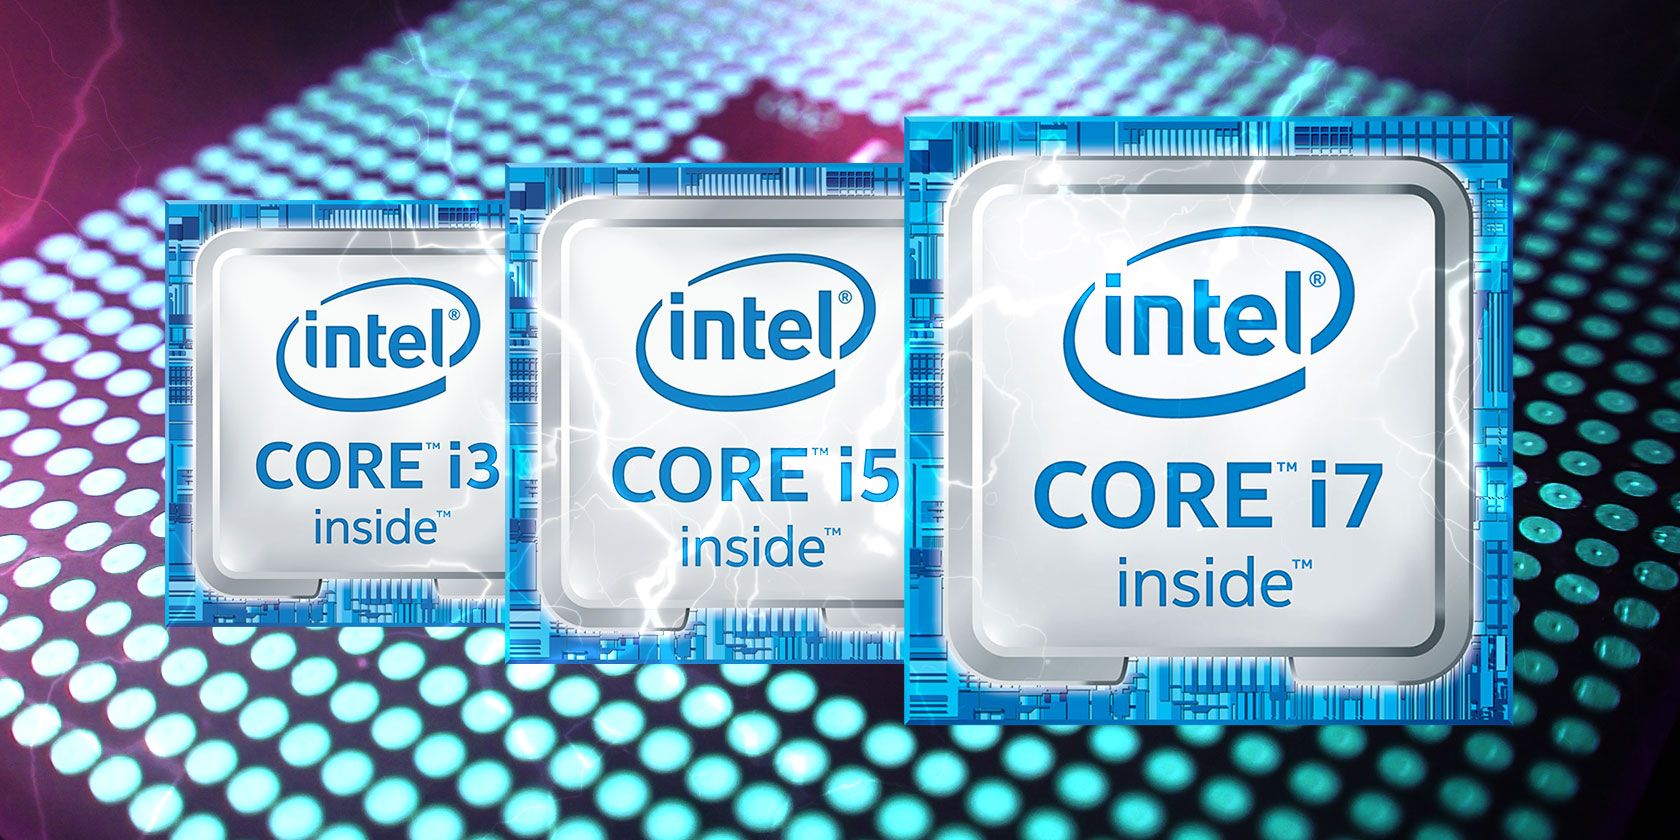 Trekker Luchtvaartmaatschappijen Bediende Intel Core i3 vs. i5 vs. i7: Which CPU Should You Buy?